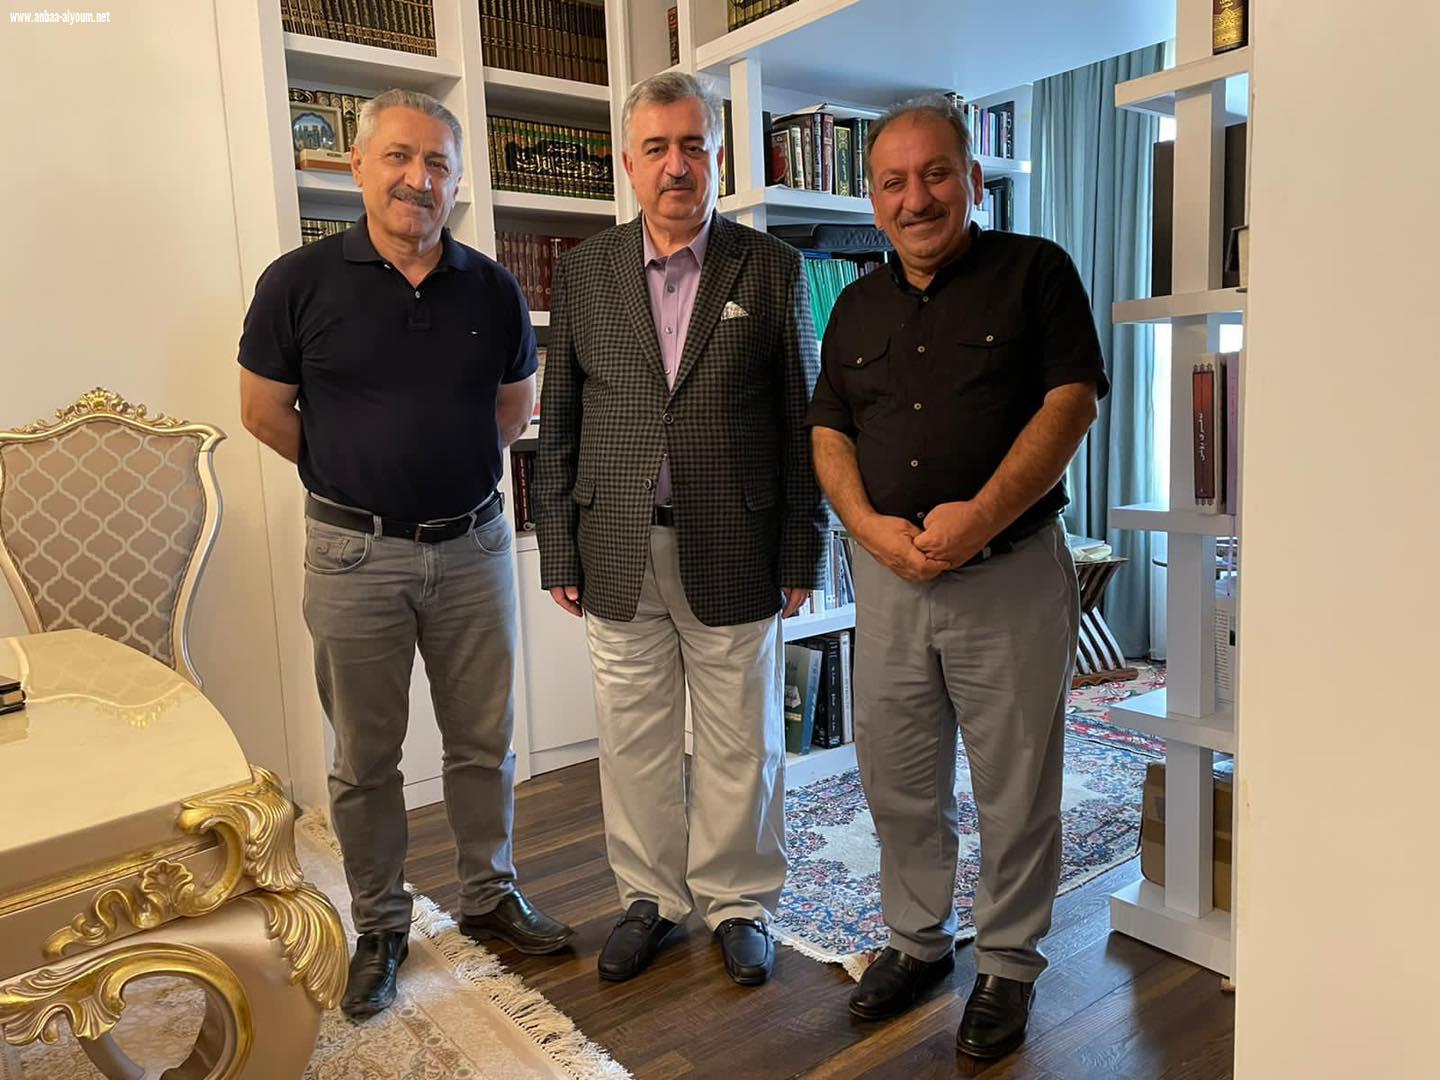 ‎السفير عمر البرزنجي يستقبل الفنانين القديرين السيد ماهر حسن والسيد أحمد جولا في منزله في السليمانية 